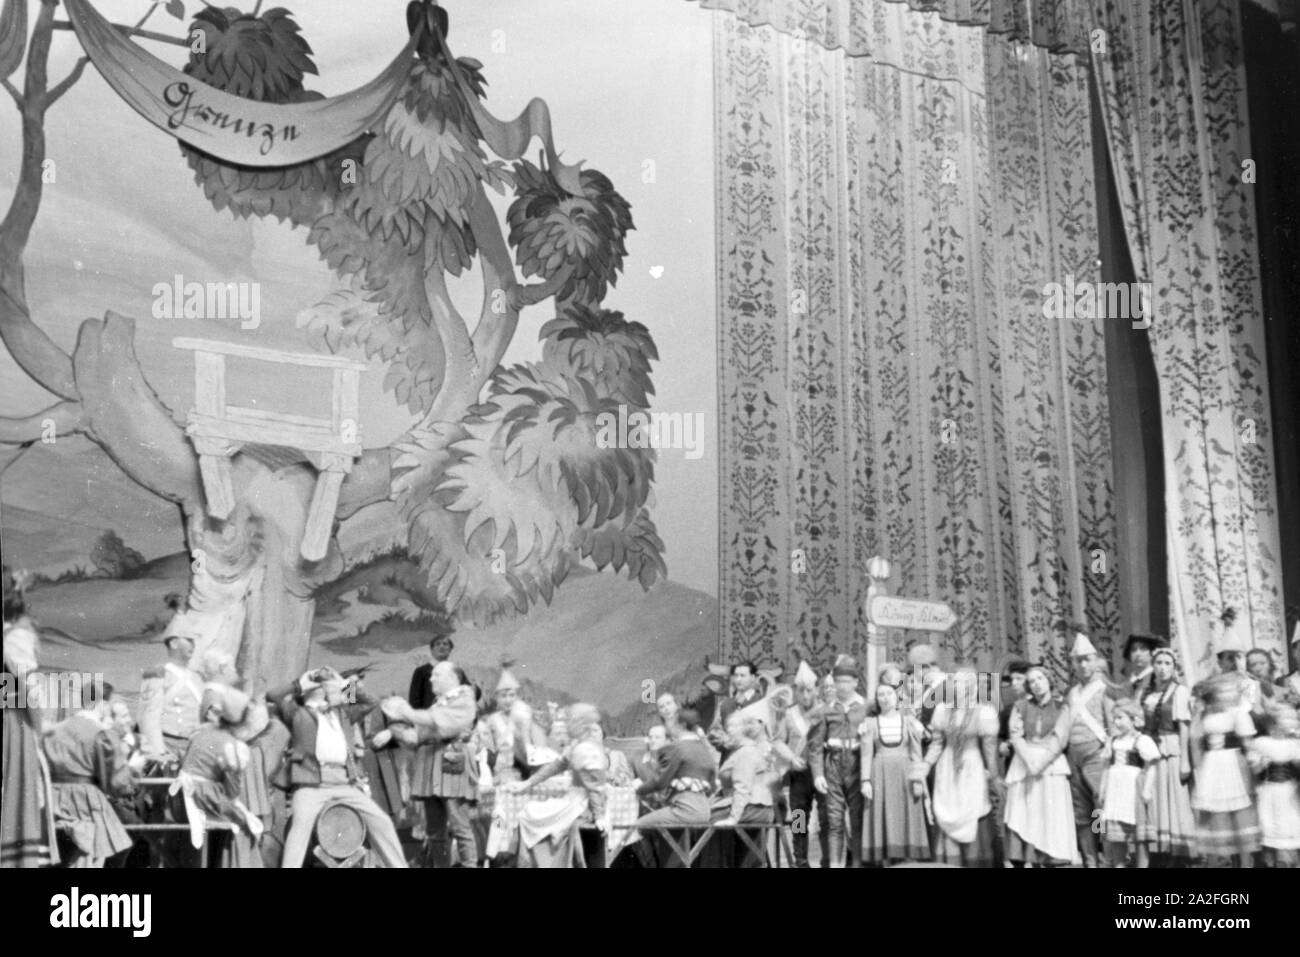 Das aufwendig gestaltete Bühnenbild und die zahlreichen Schauspieler während eines Theaterstücks für Kinder, Deutschland 1930er Jahre. Elegantemente progettato di scena e i numerosi attori durante un teatro per bambini giocare, Germania 1930s. Foto Stock